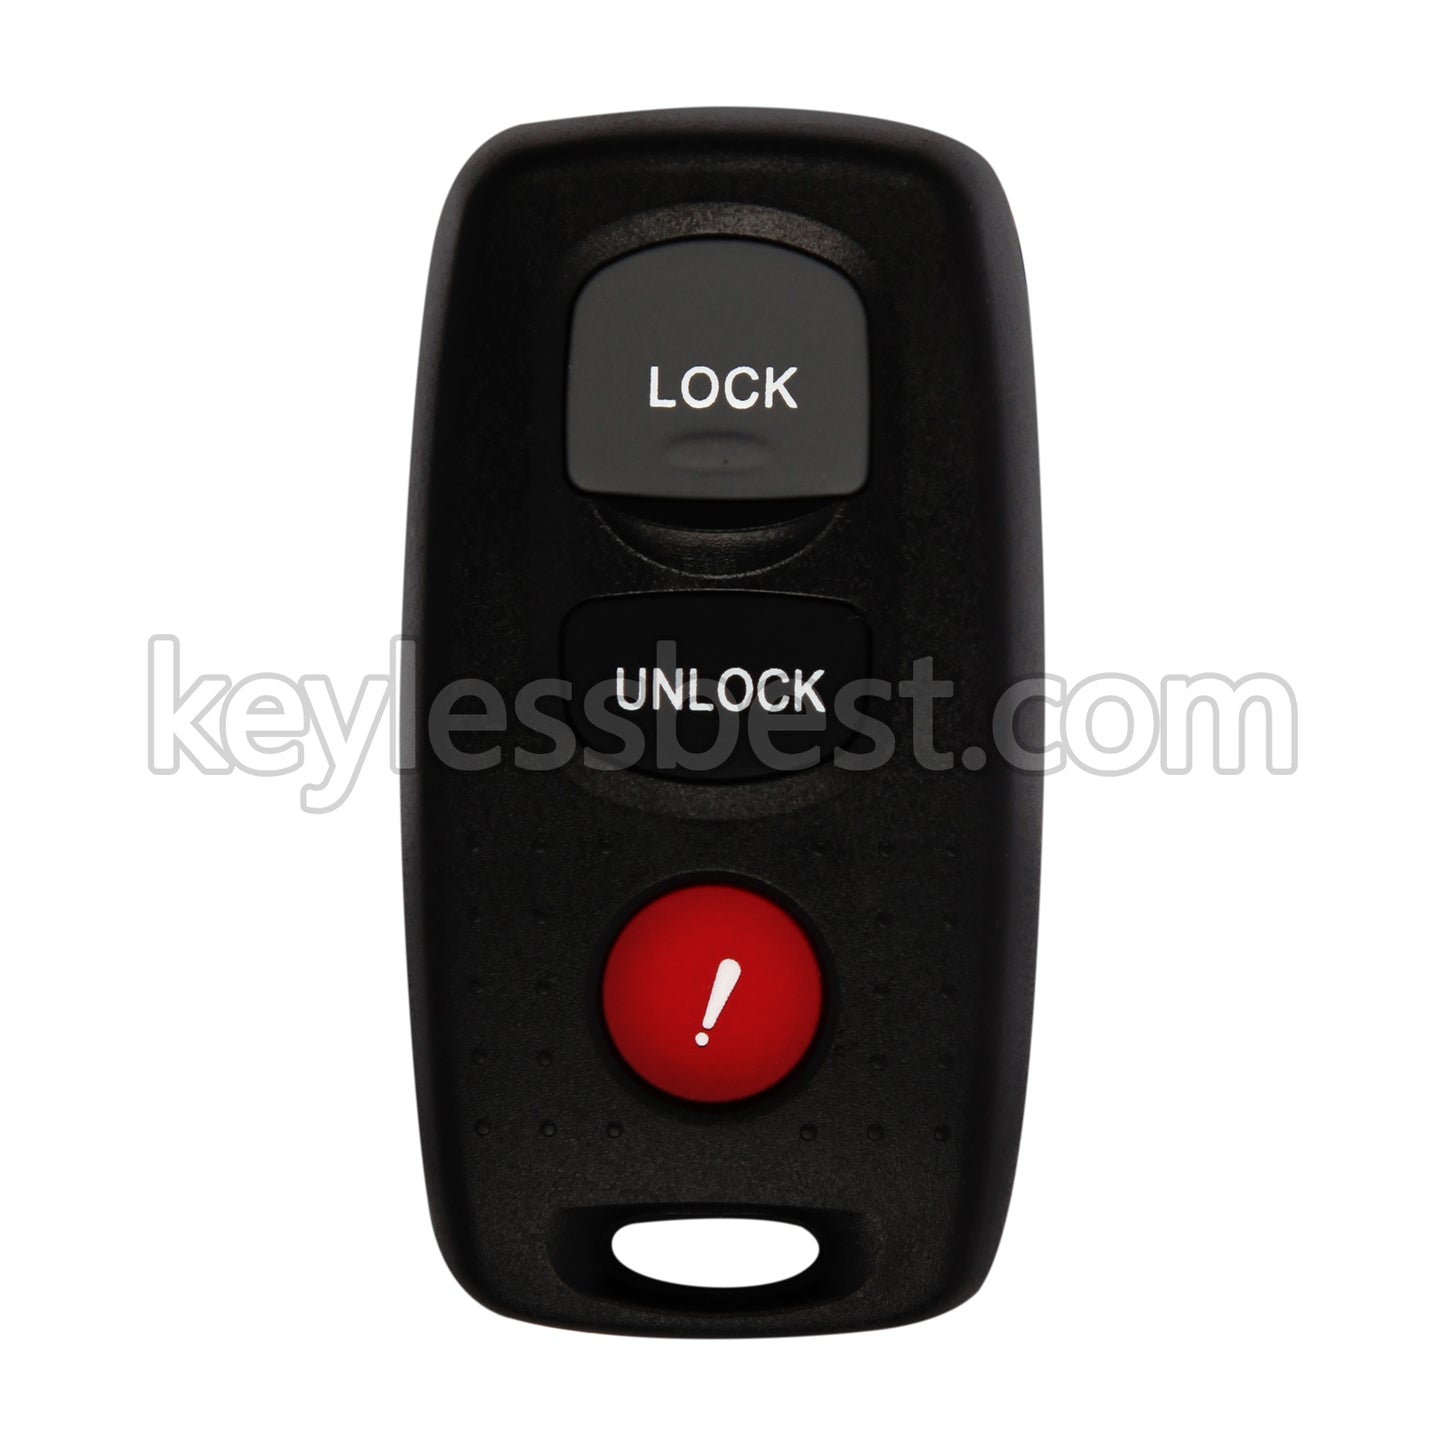 2007 - 2009 Mazda 3 4-Door 5-Door Mazdaspeed 3 / 4 Buttons Remote Key / KPU41794 / 313.8MHz